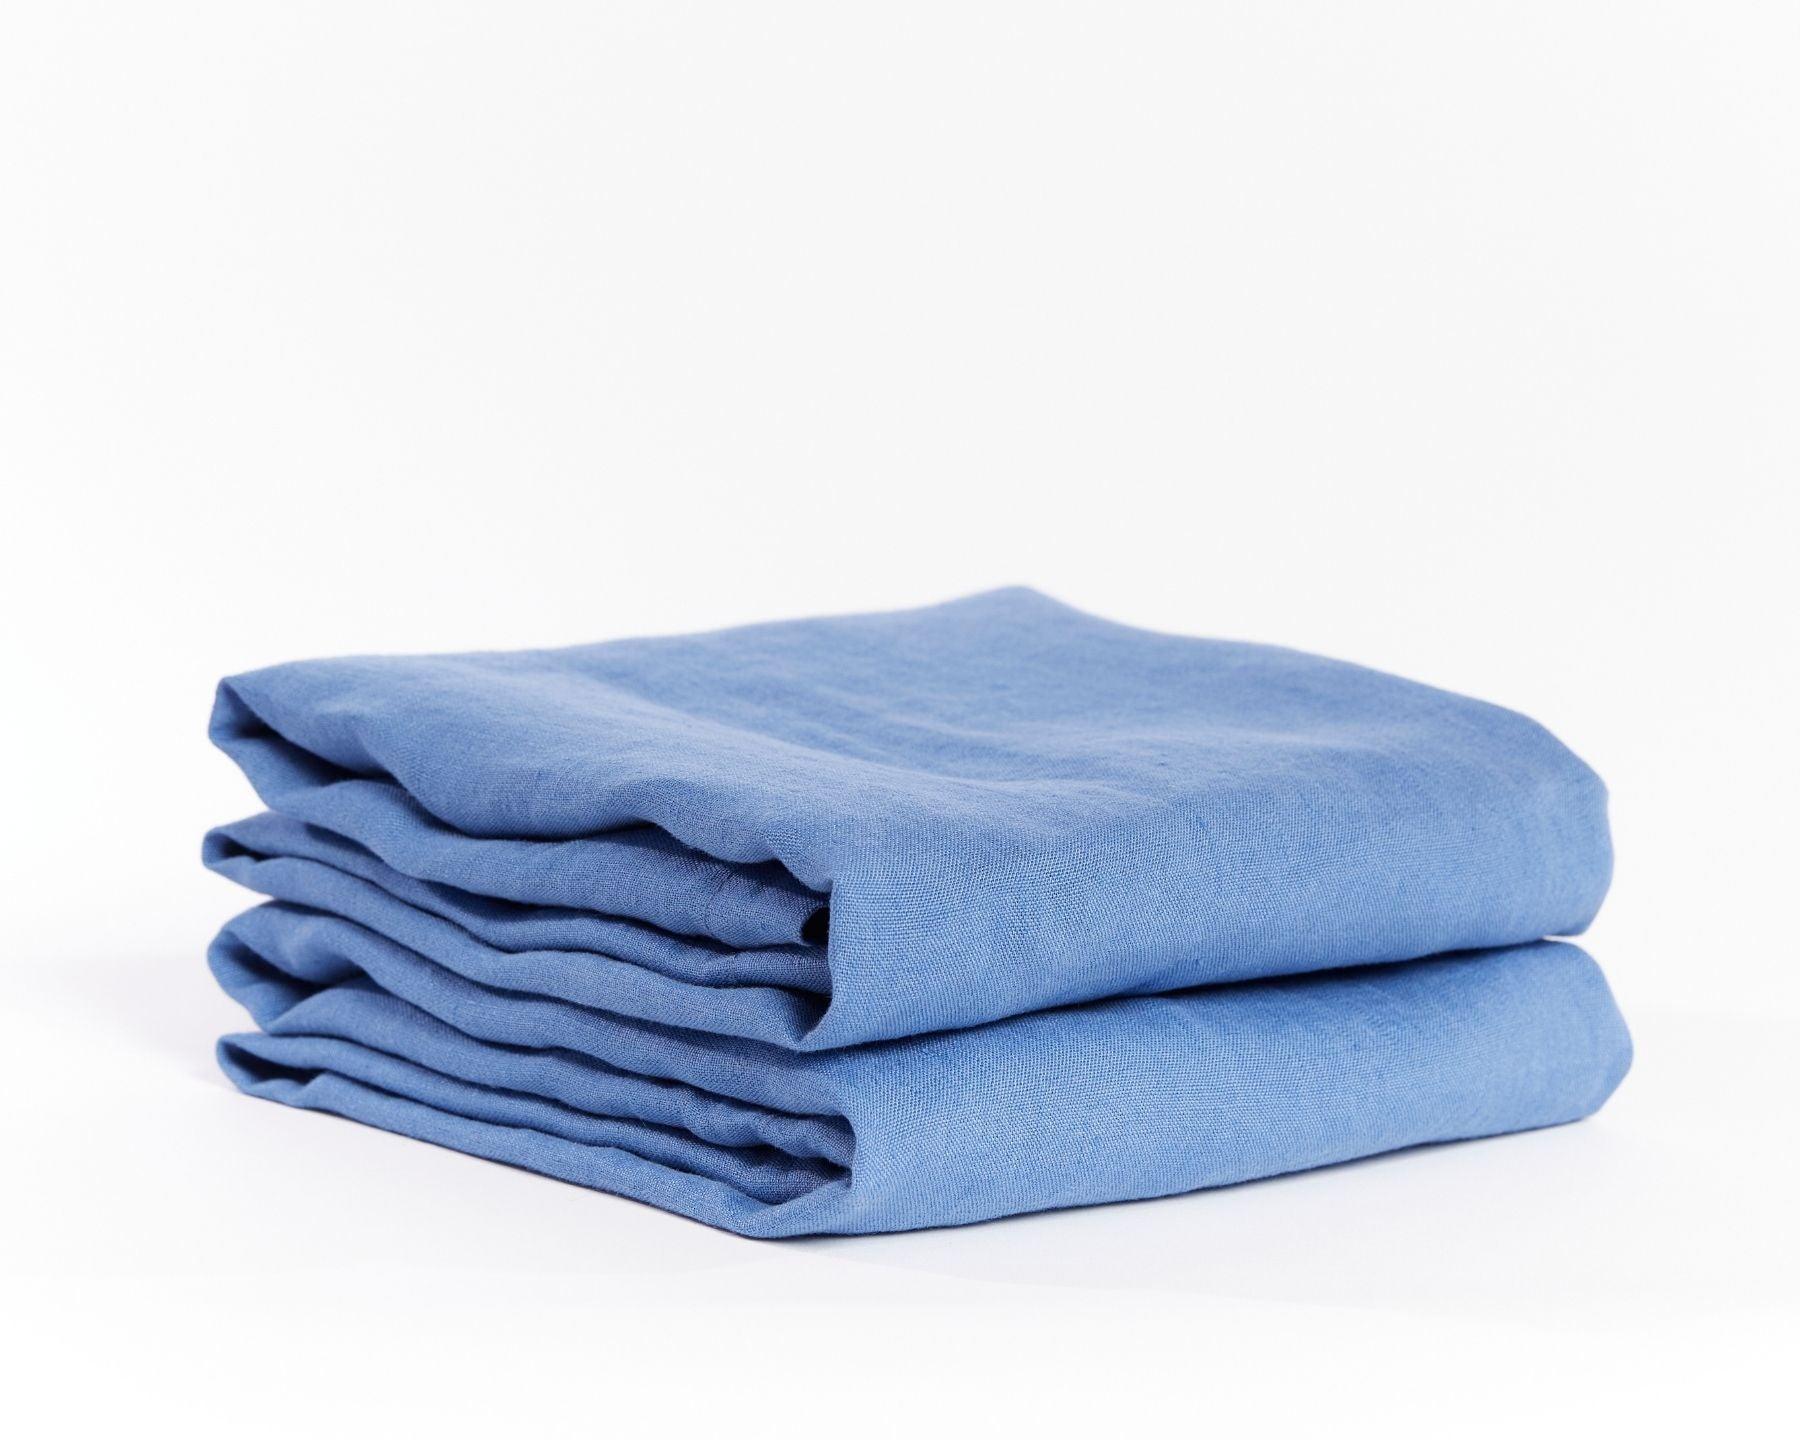 Light blue organic European flax linen pillowcases - Lyseblå (Hørblomst)